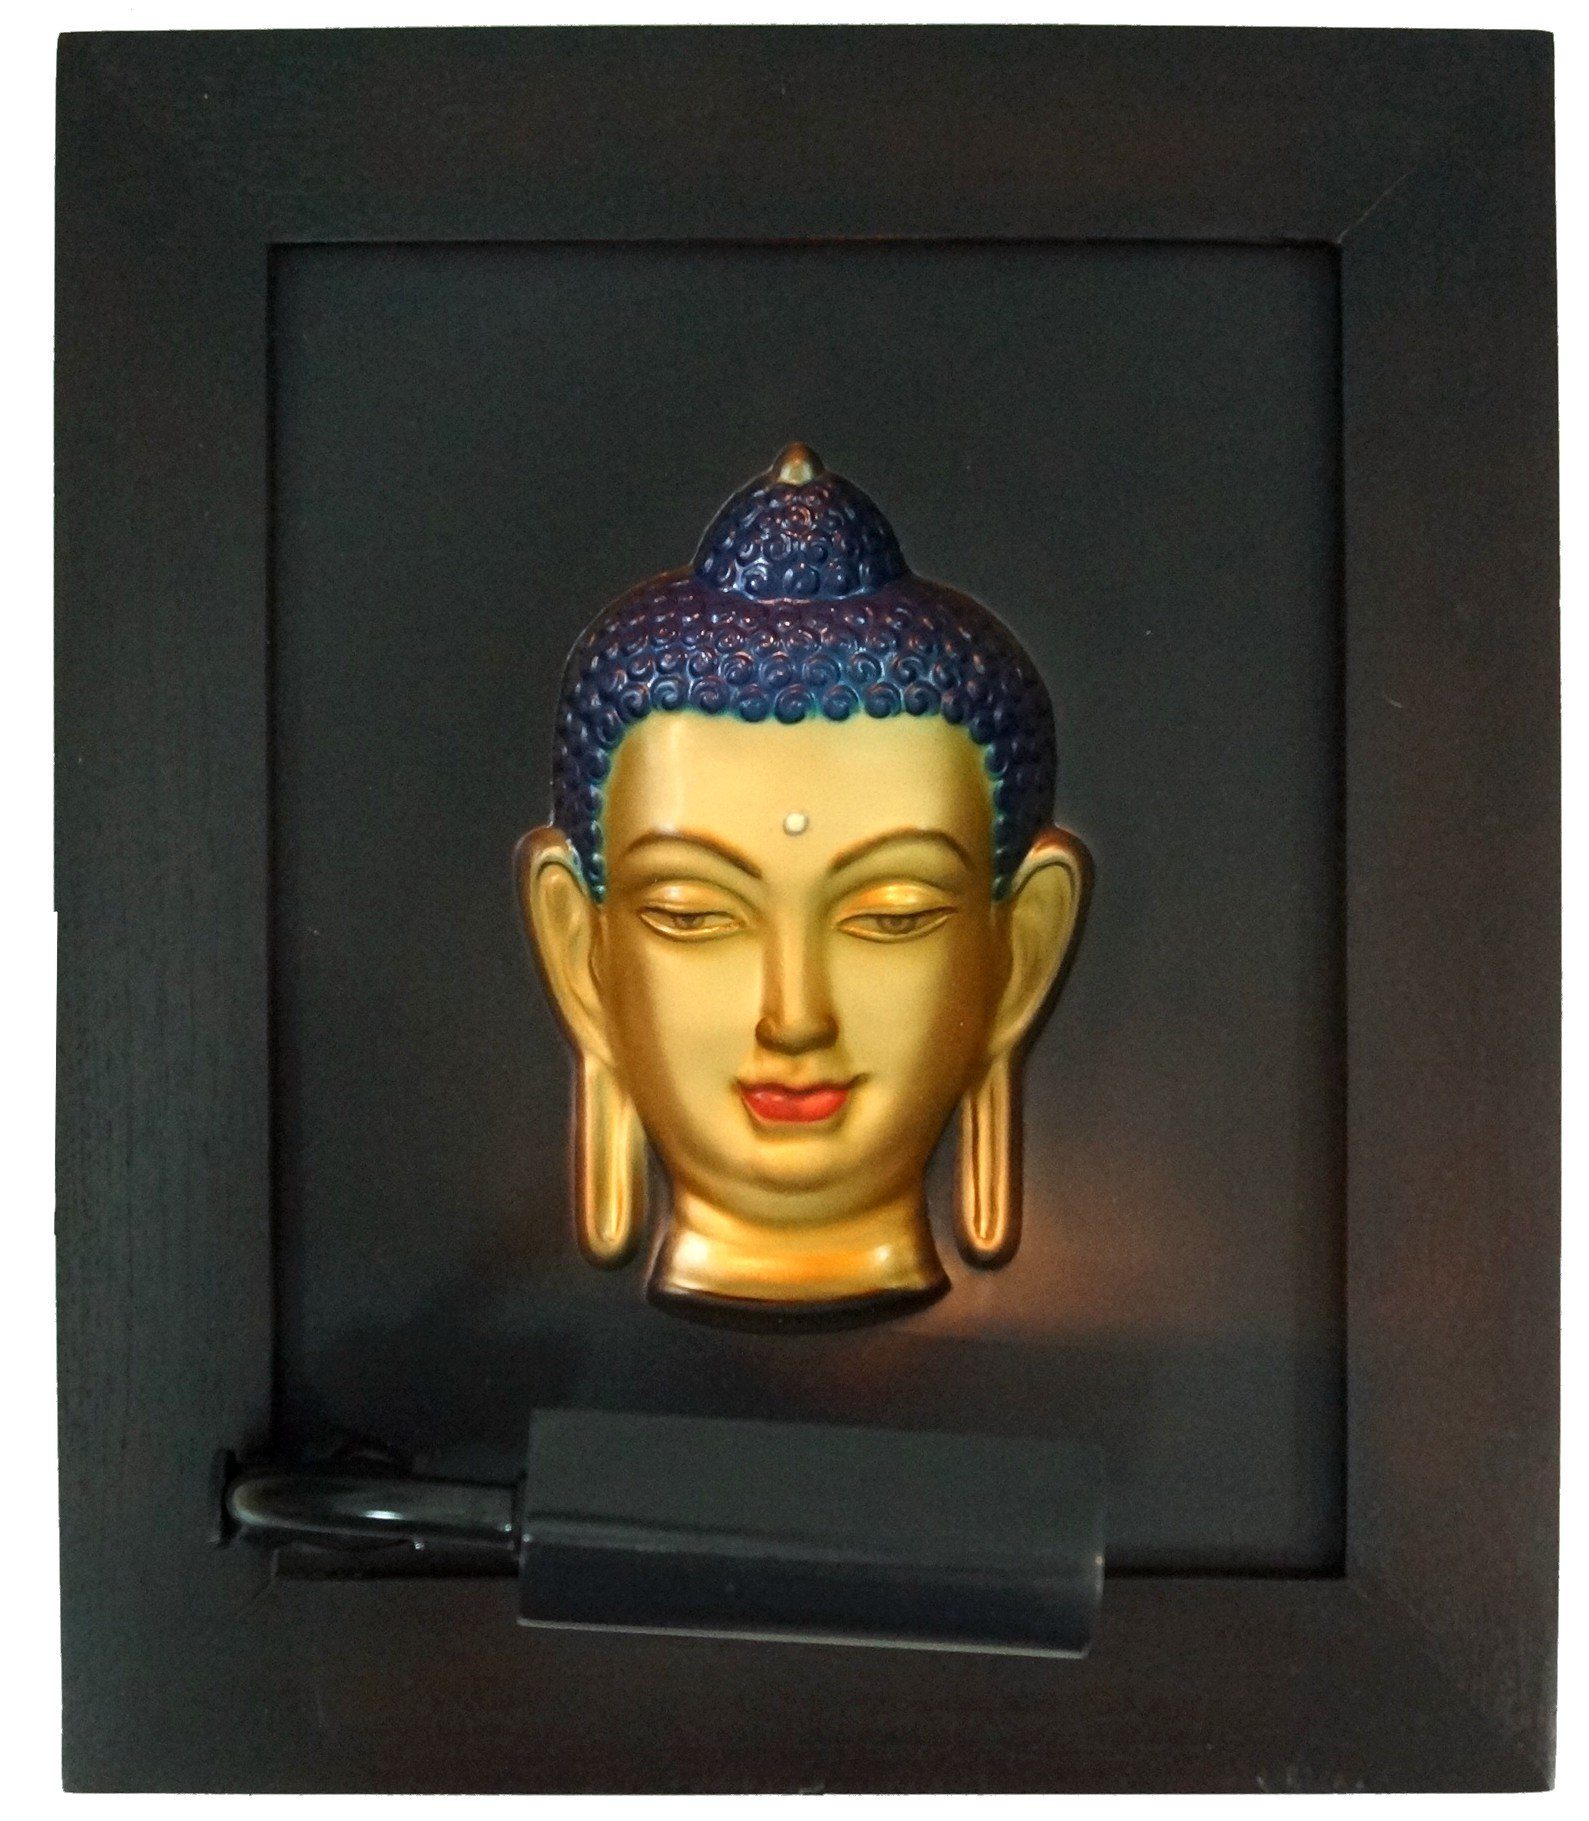 Hologramm Modell Guru-Shop - 3-D Buddhafigur Bild 6 Buddha